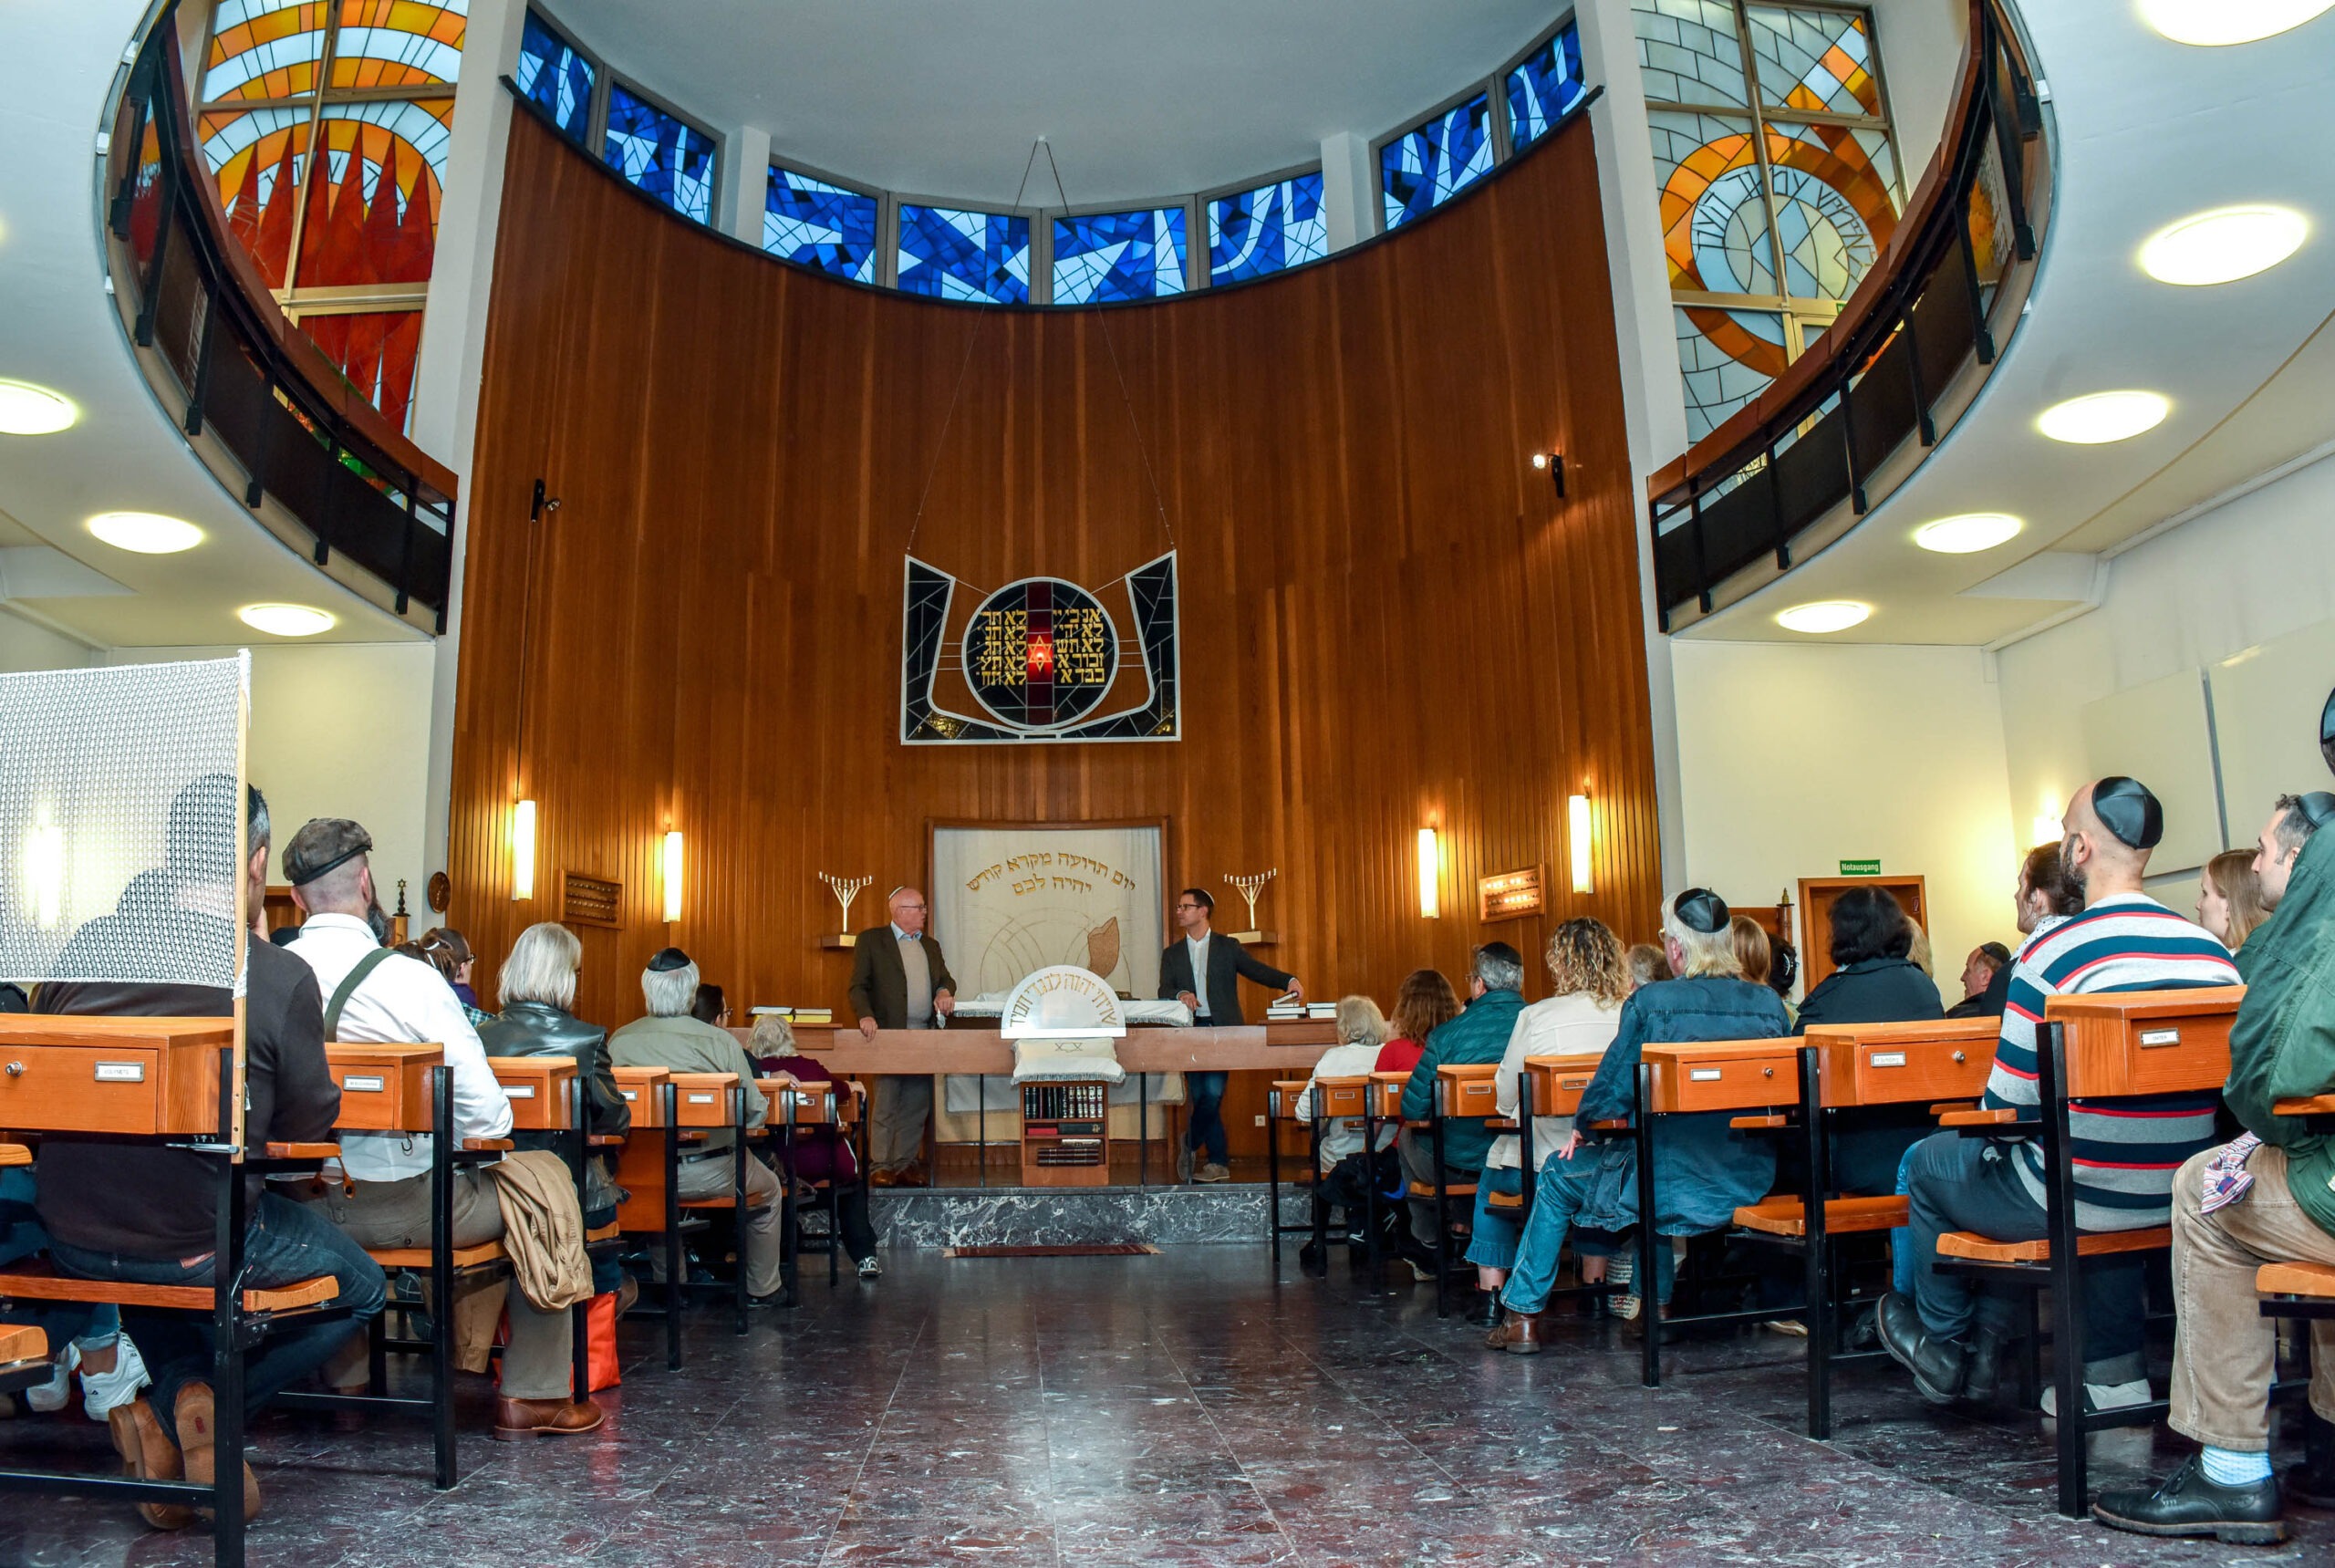 Journée portes ouvertes à la synagogue de Wiesbaden dans le cadre de la série de manifestations « Tarbut - Temps pour la culture juive ». Photographe : Igor Eisenschtat. Collection de la communauté juive de Wiesbaden